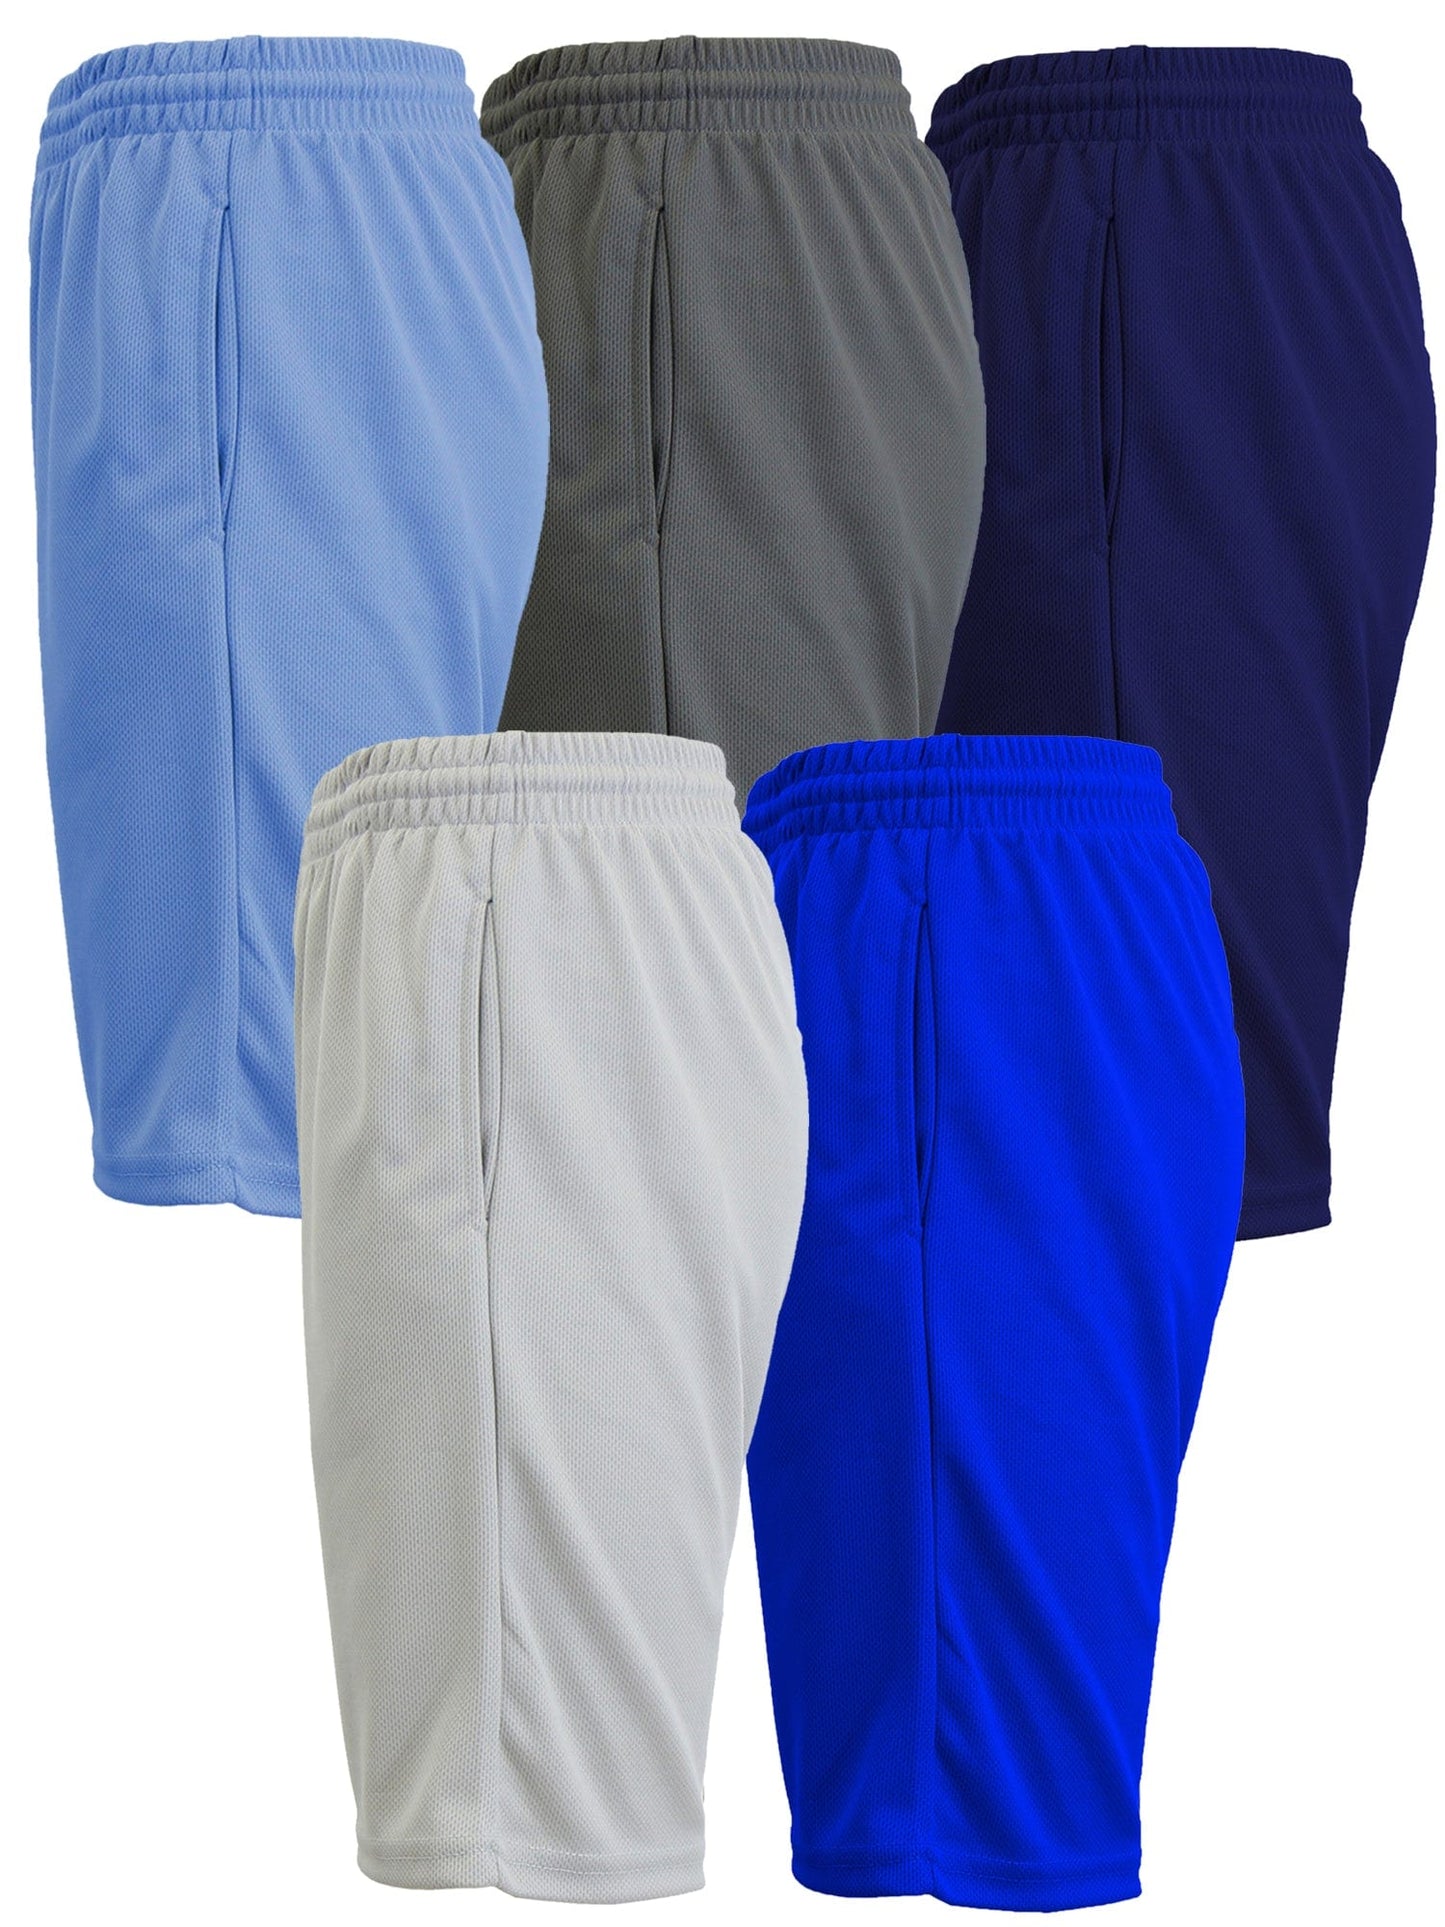 Paquete de 5 pantalones cortos de malla ligeros y transpirables que absorben la humedad para hombre